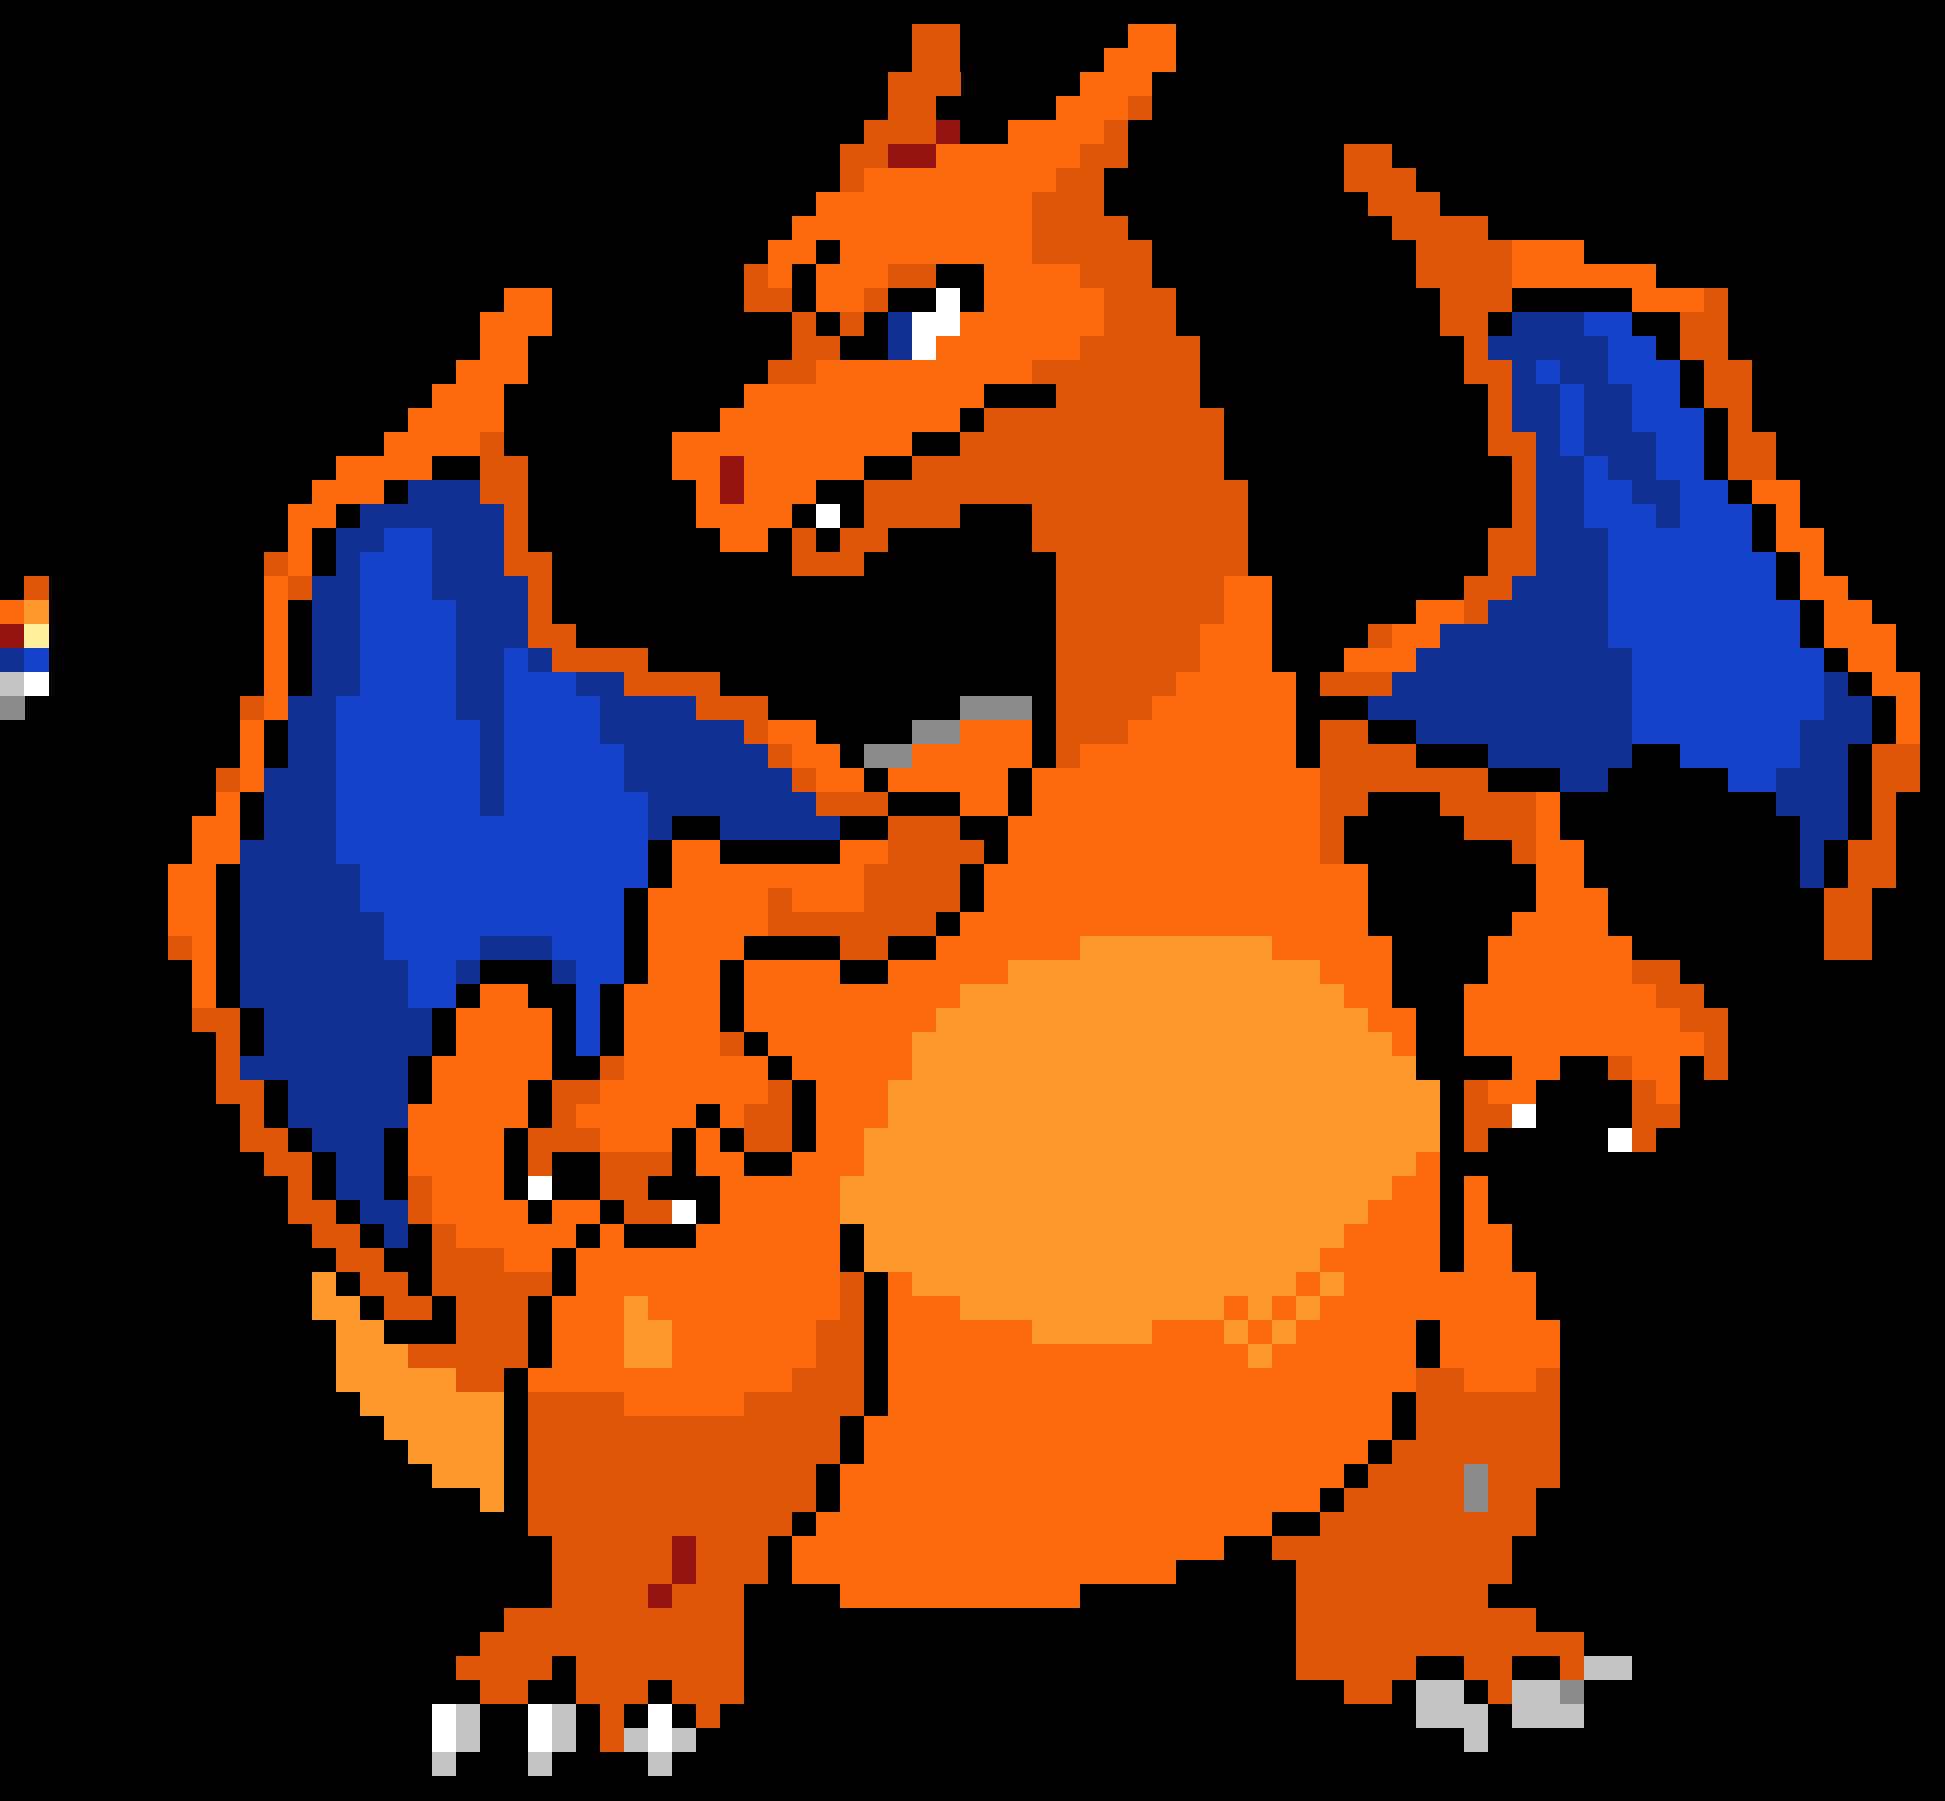 A Pixel Art Of A Dragon